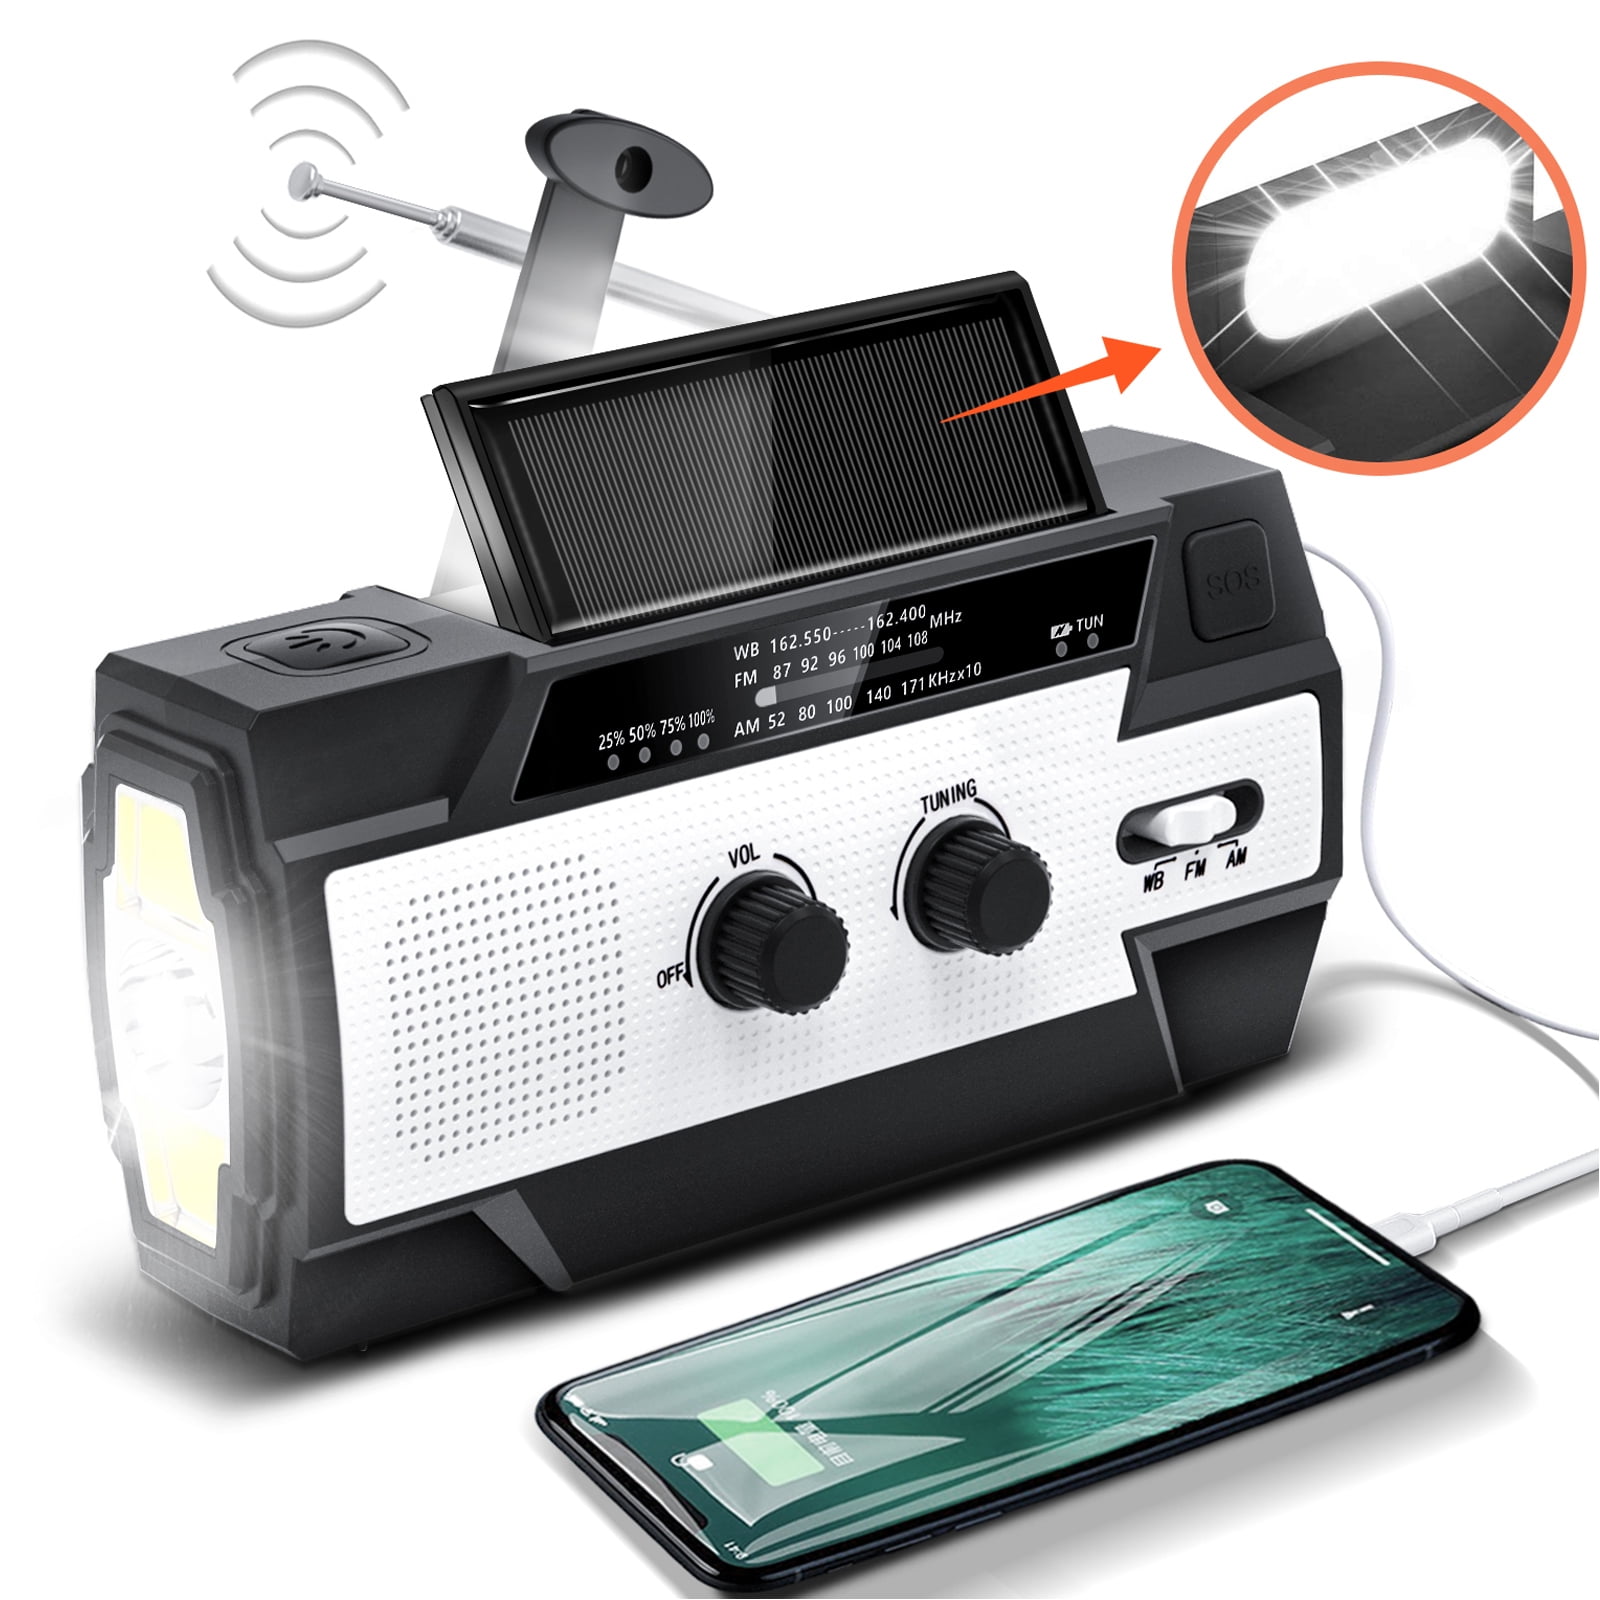 Orange Upgrade to 2000mAh Power Bank Phone Charger Hand Crank Emergency NOAA Radio with LED Flashlight AM/FM WB Weather Radio Solar Charging Indicator 